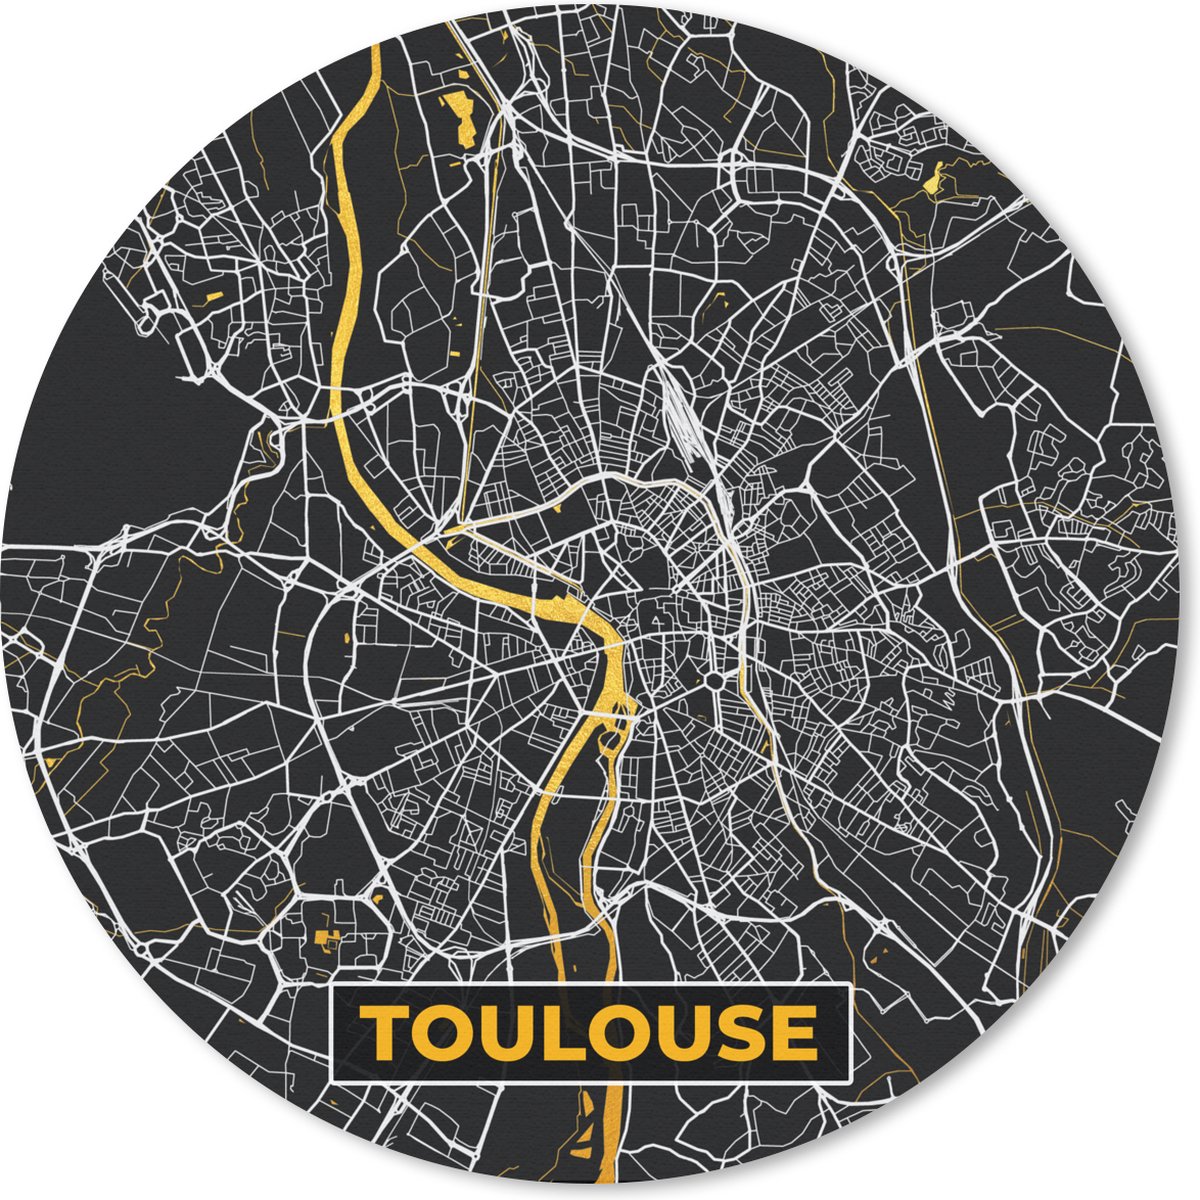 Muismat - Mousepad - Rond - Frankrijk – Plattegrond – Toulouse - Stadskaart - Kaart - 50x50 cm - Ronde muismat